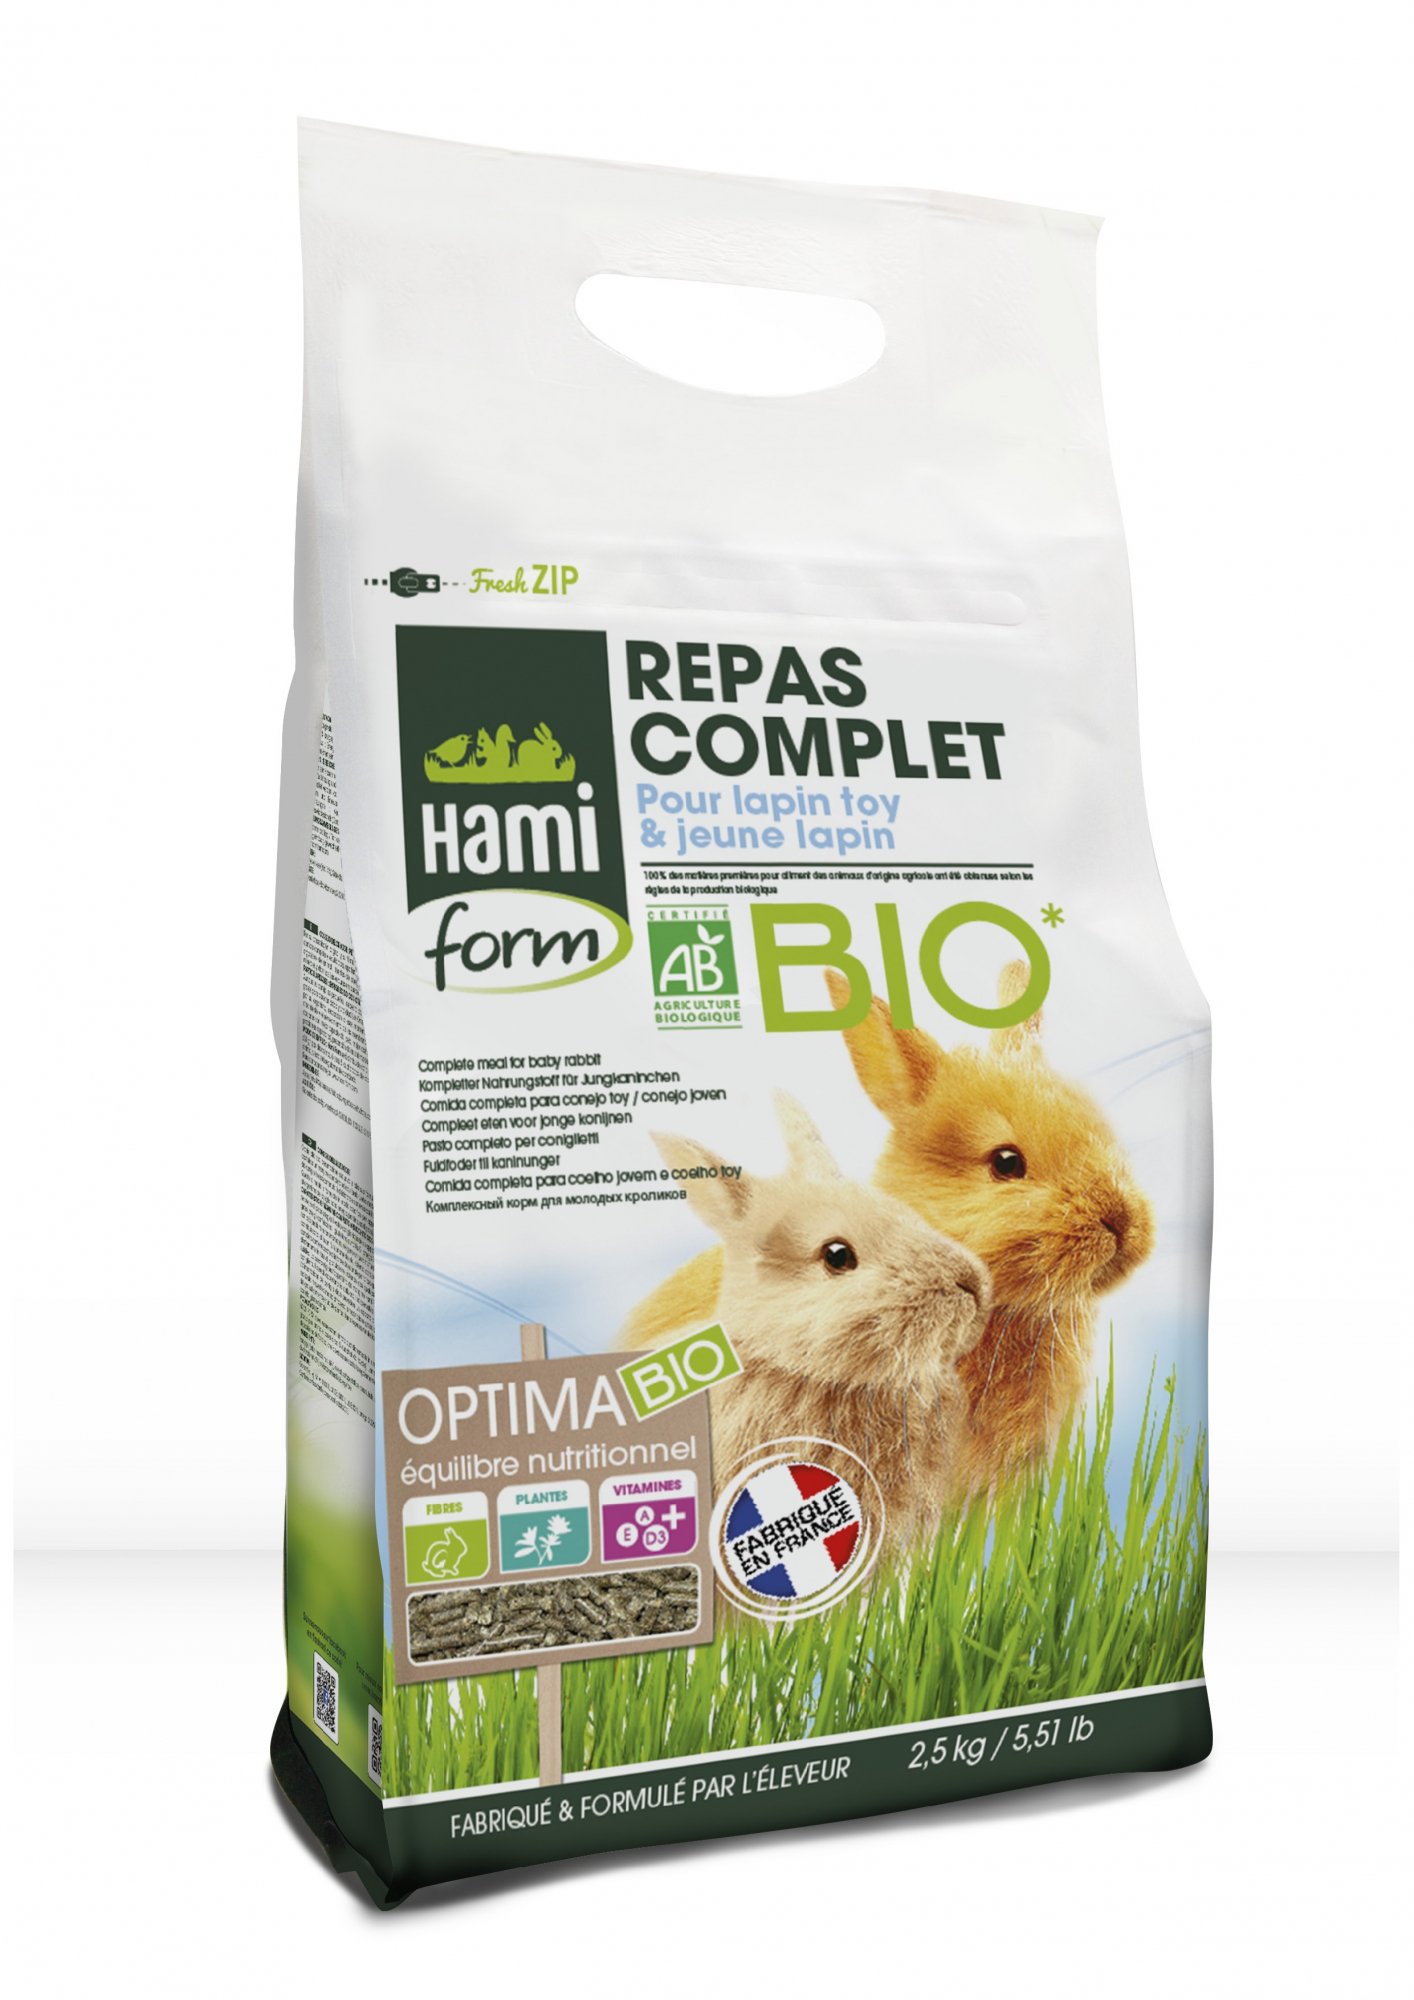 Hamiform Optima Bio Komplette Mahlzeit Junges Kaninchen und Toy Kaninchen